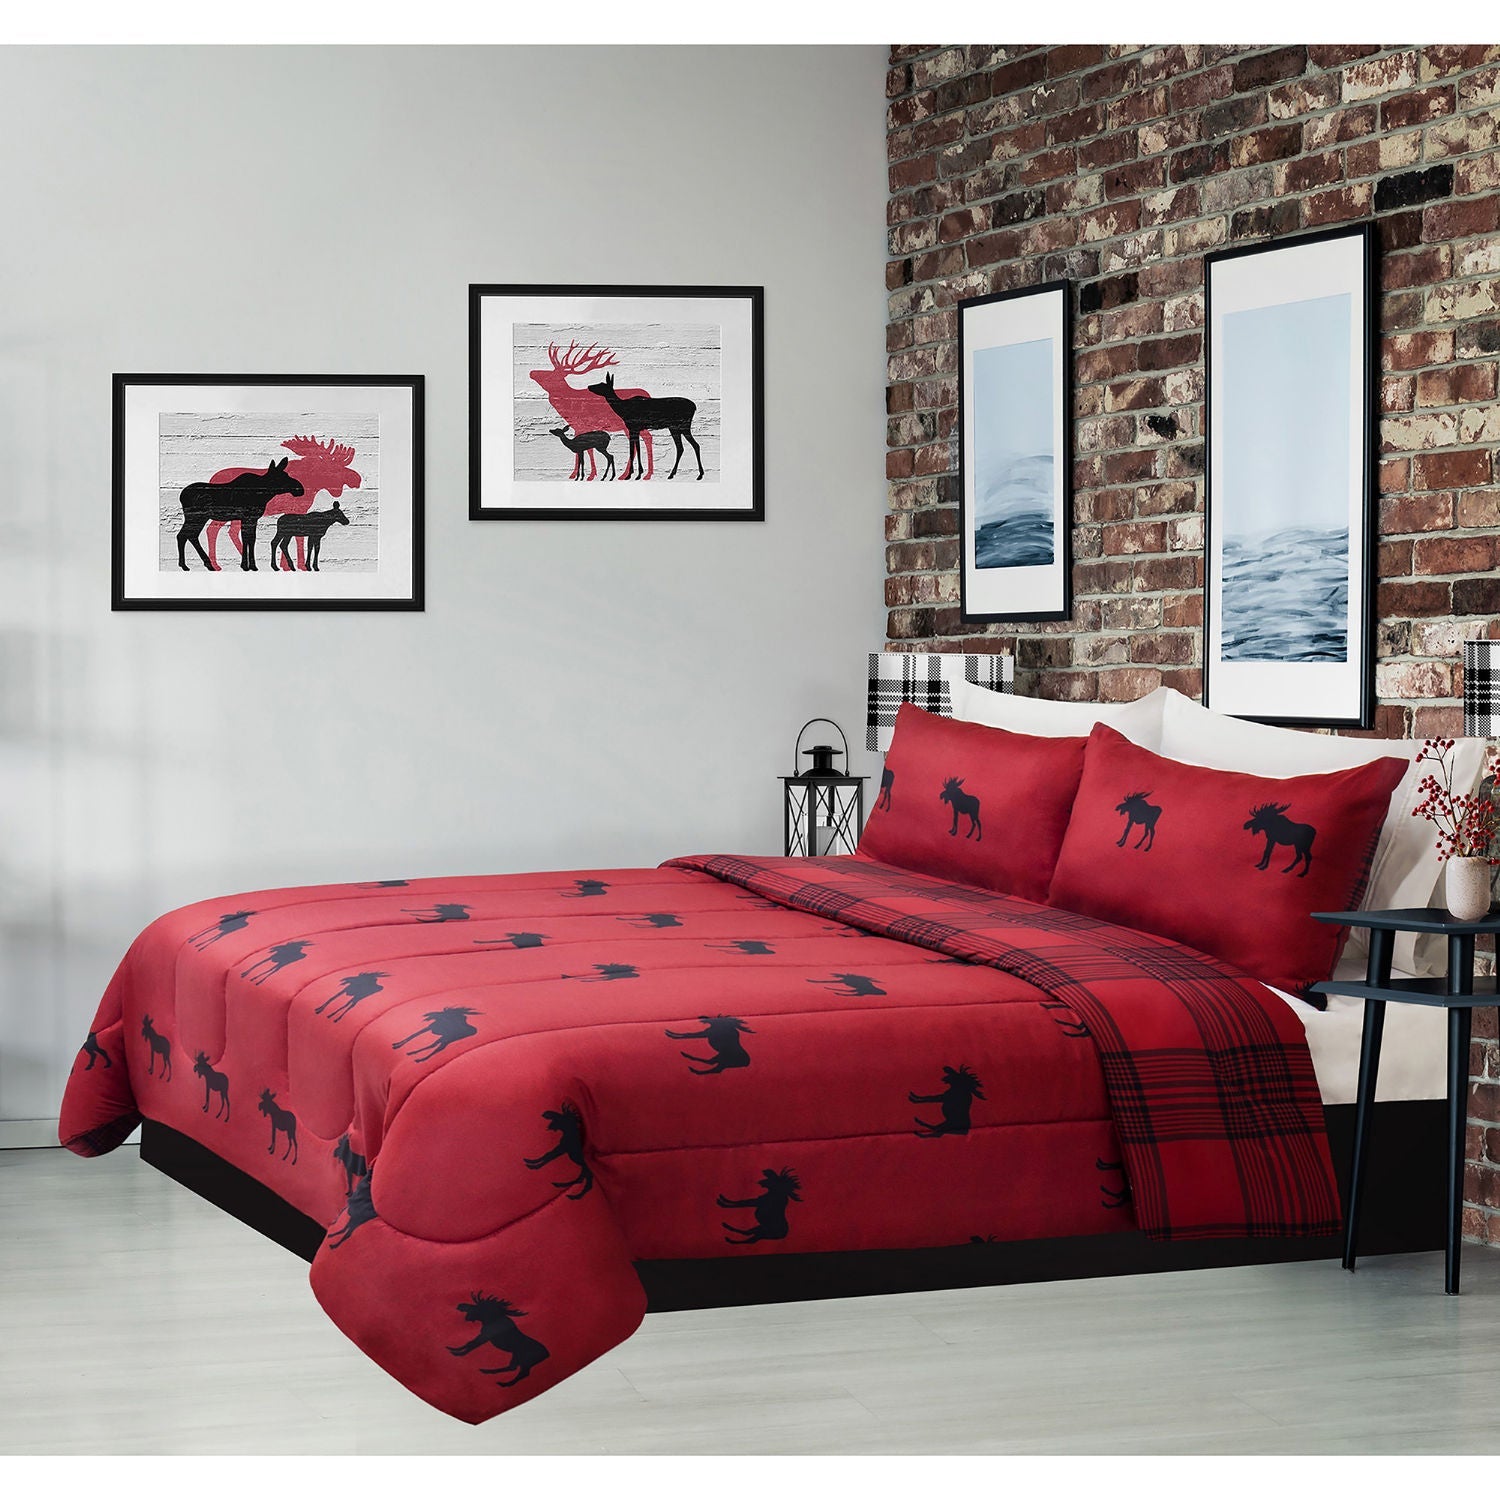 Reversible Printed Comforter Bedding Set 3 Piece Double/Queen Heathered Moose Rustic Cabin - DecoElegance - Bedding Comforter Set